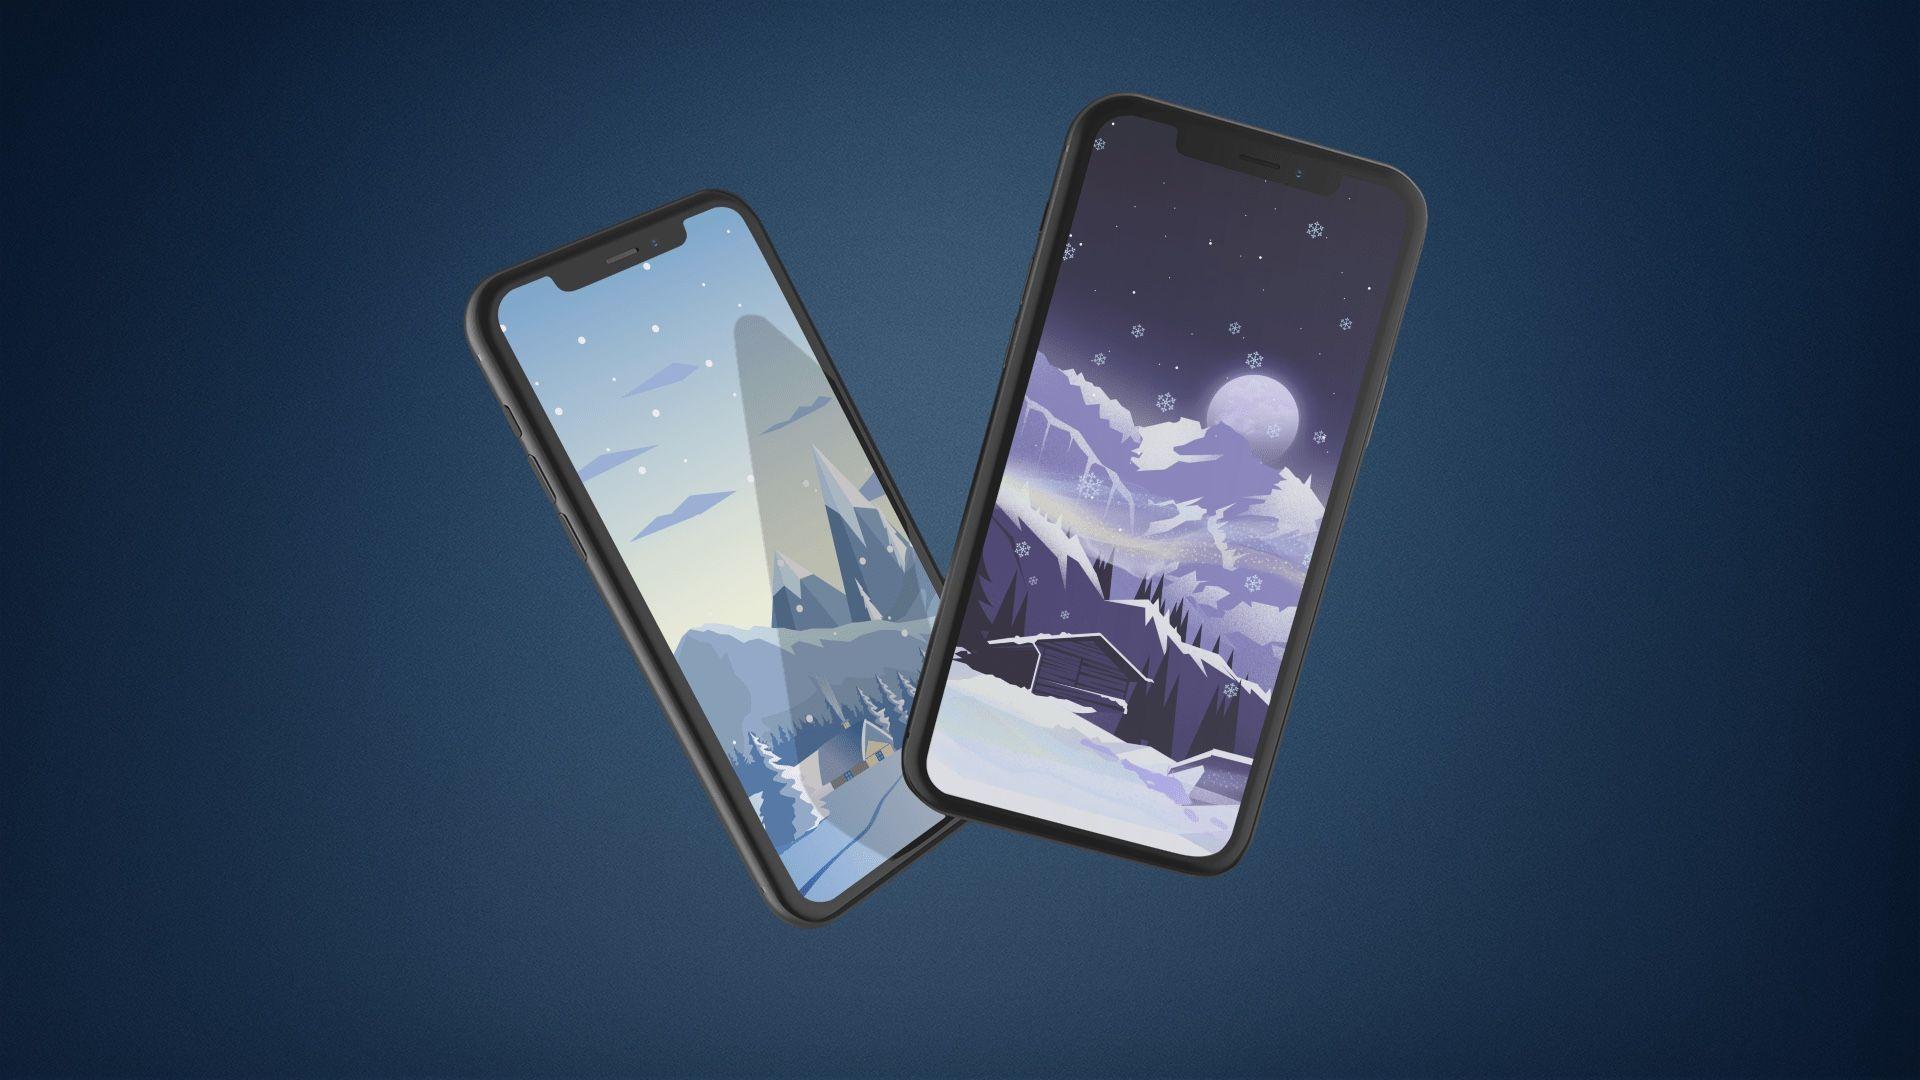 1920x1080 Snowy hình nền minh họa cho iPhone